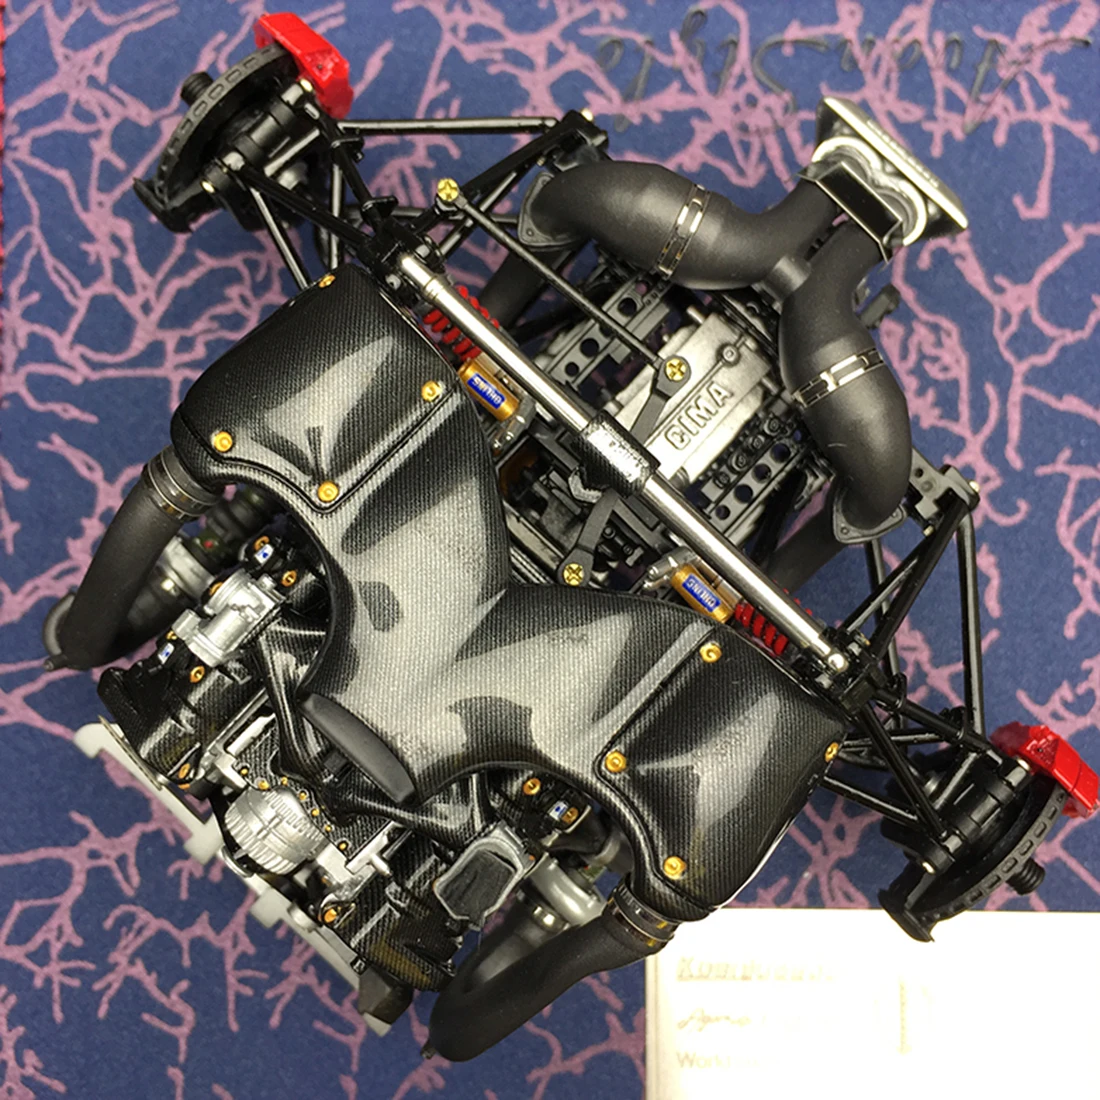 NFSTRIKE Frontiart FA 1:18 Agera RS Модель двигателя Смола двигатель Новое поступление-Коллекционное издание(готовая версия